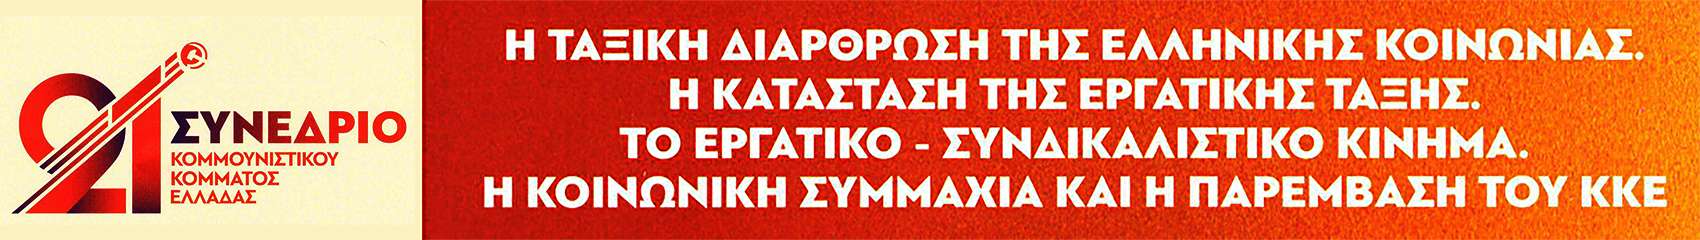 ΚΚΕ_KKE 21 SYNEDRIO Συνέδριο theseis Θέσεις 3 Θέμα